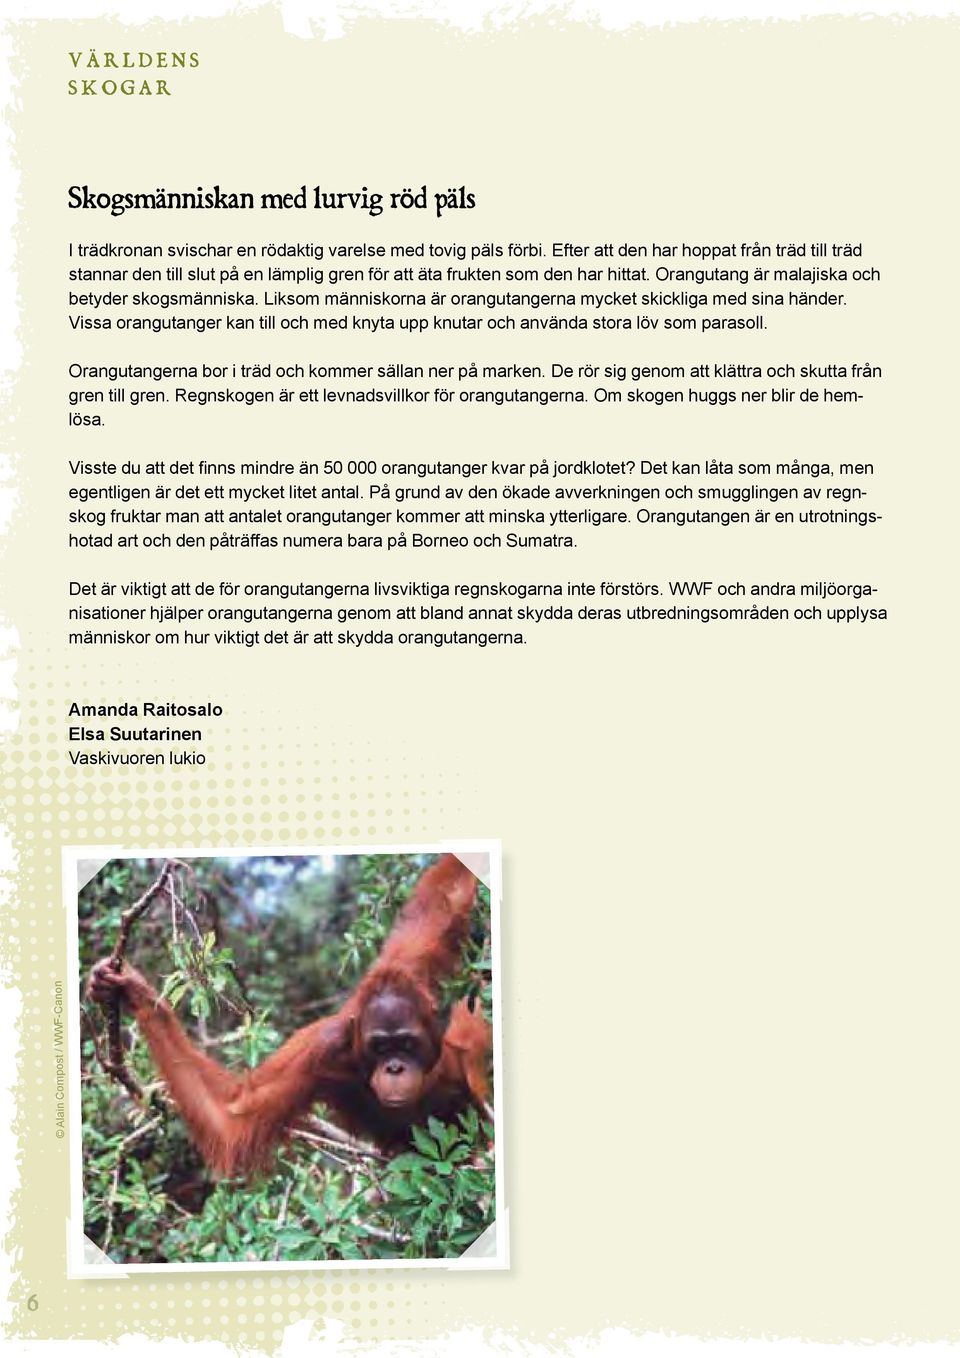 Liksom människorna är orangutangerna mycket skickliga med sina händer. Vissa orangutanger kan till och med knyta upp knutar och använda stora löv som parasoll.